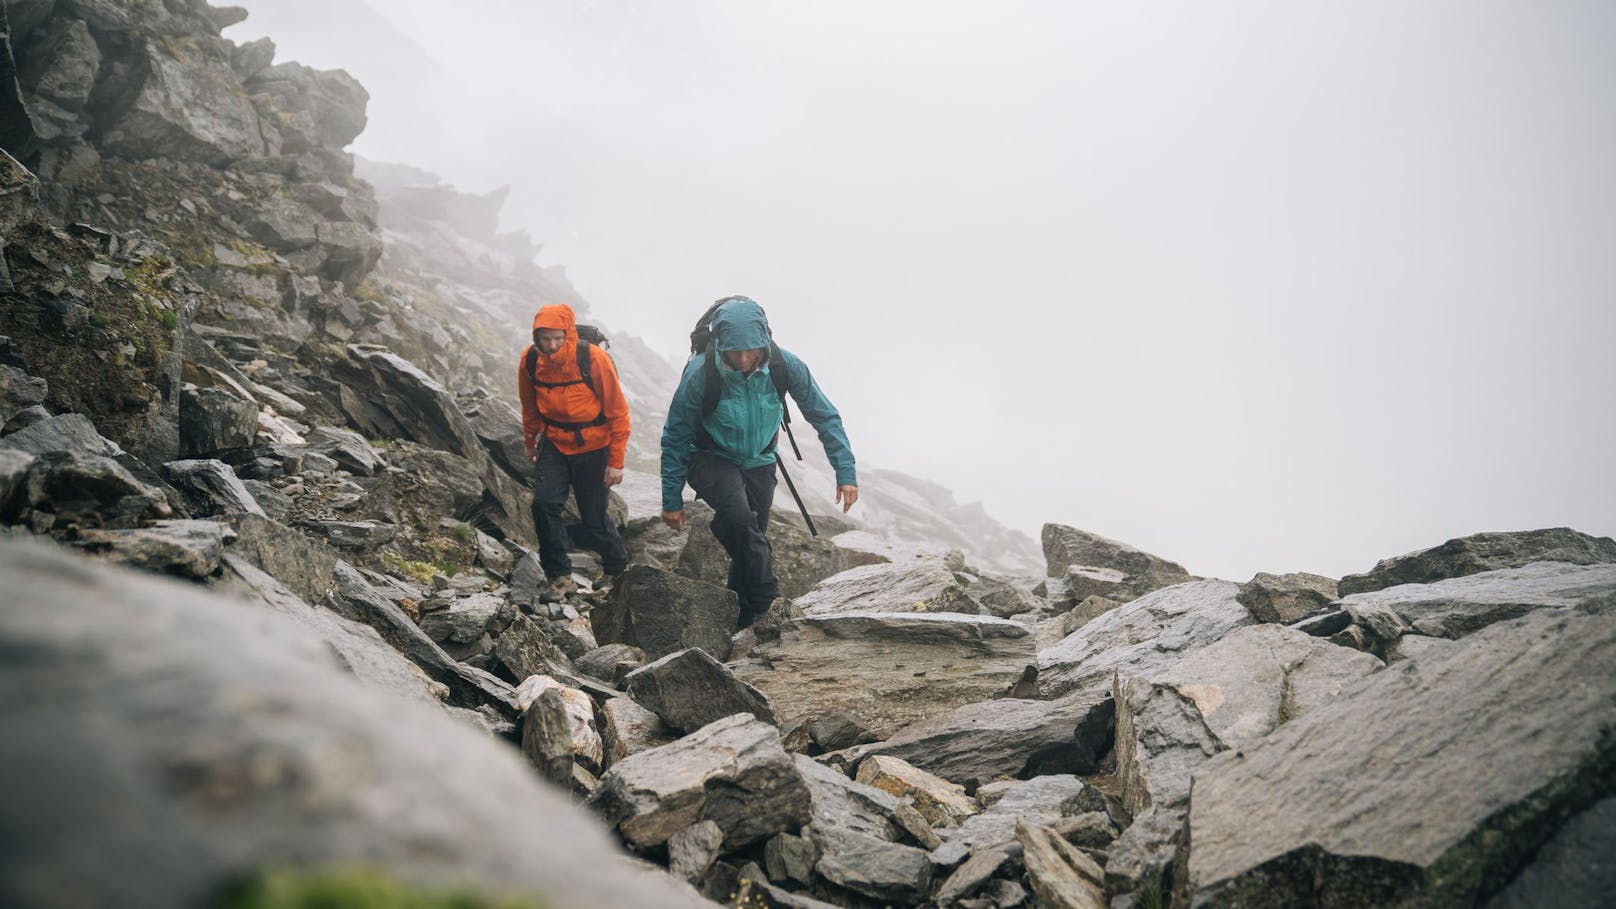 Bergtouren werden zunehmend gefährlicher, warnt der Alpenverein.